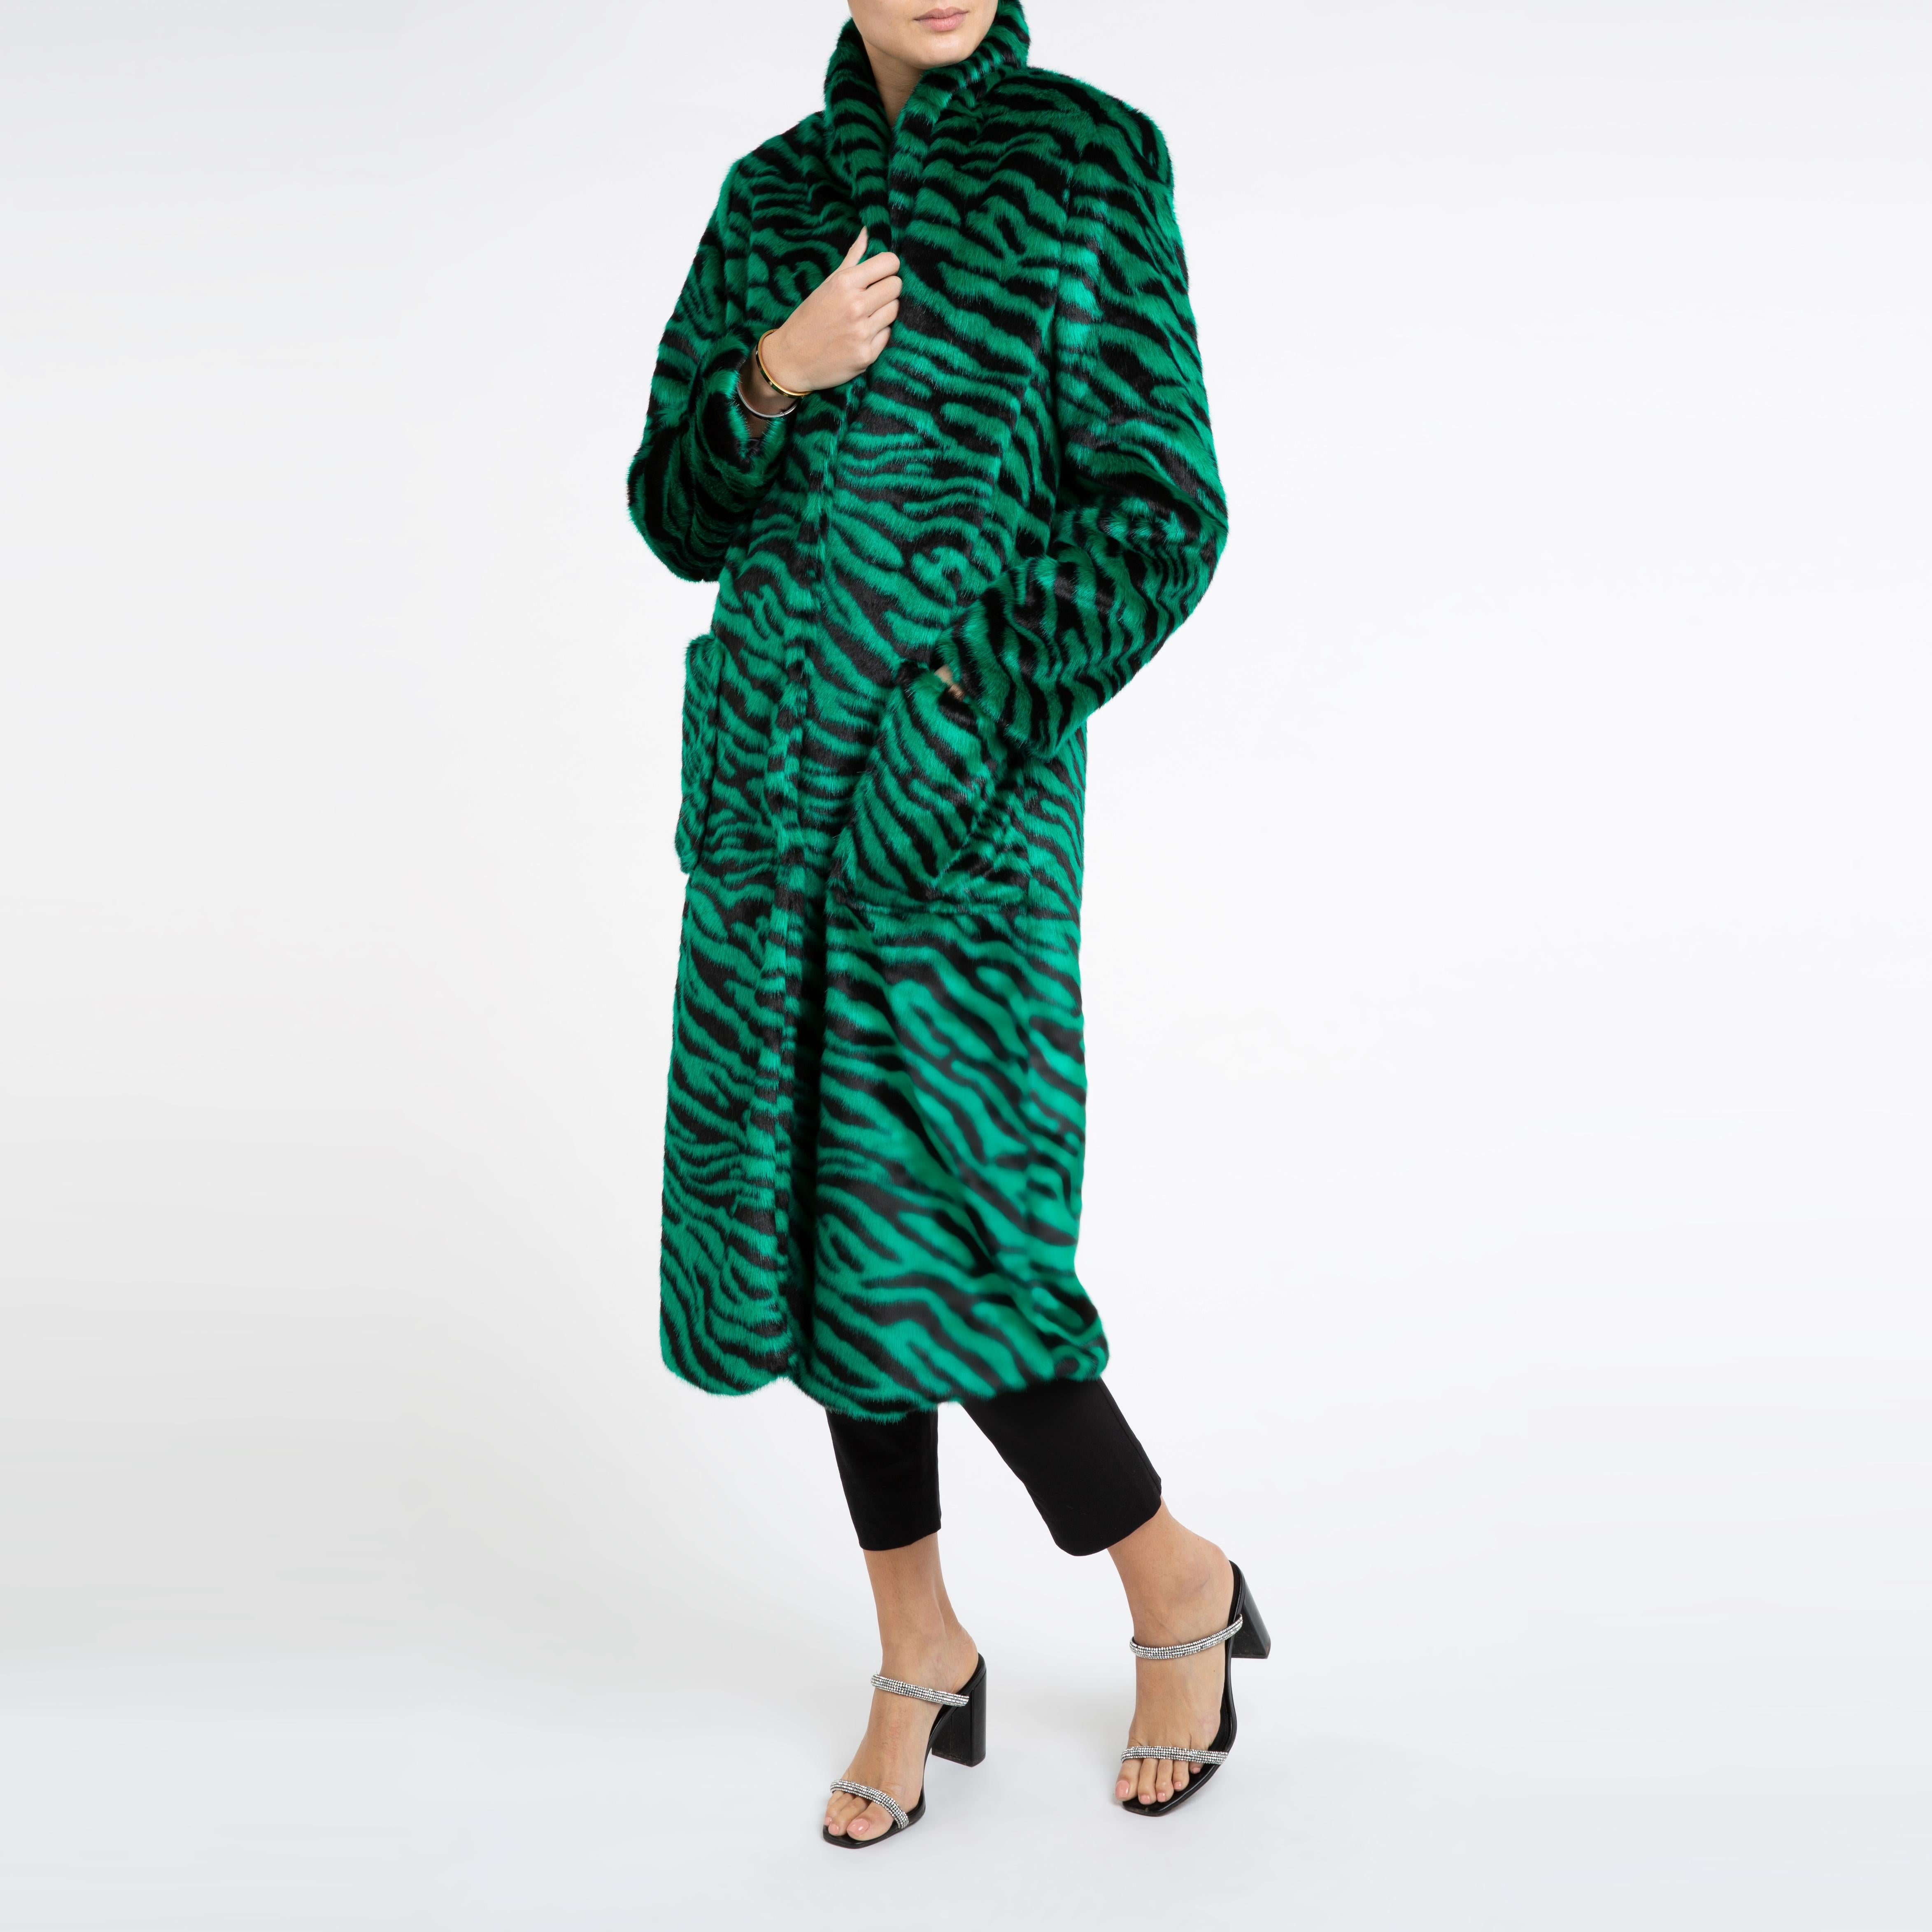 Verheyen London Esmeralda Faux Fur Coat in Emerald Green Zebra Print size uk 8 For Sale 2